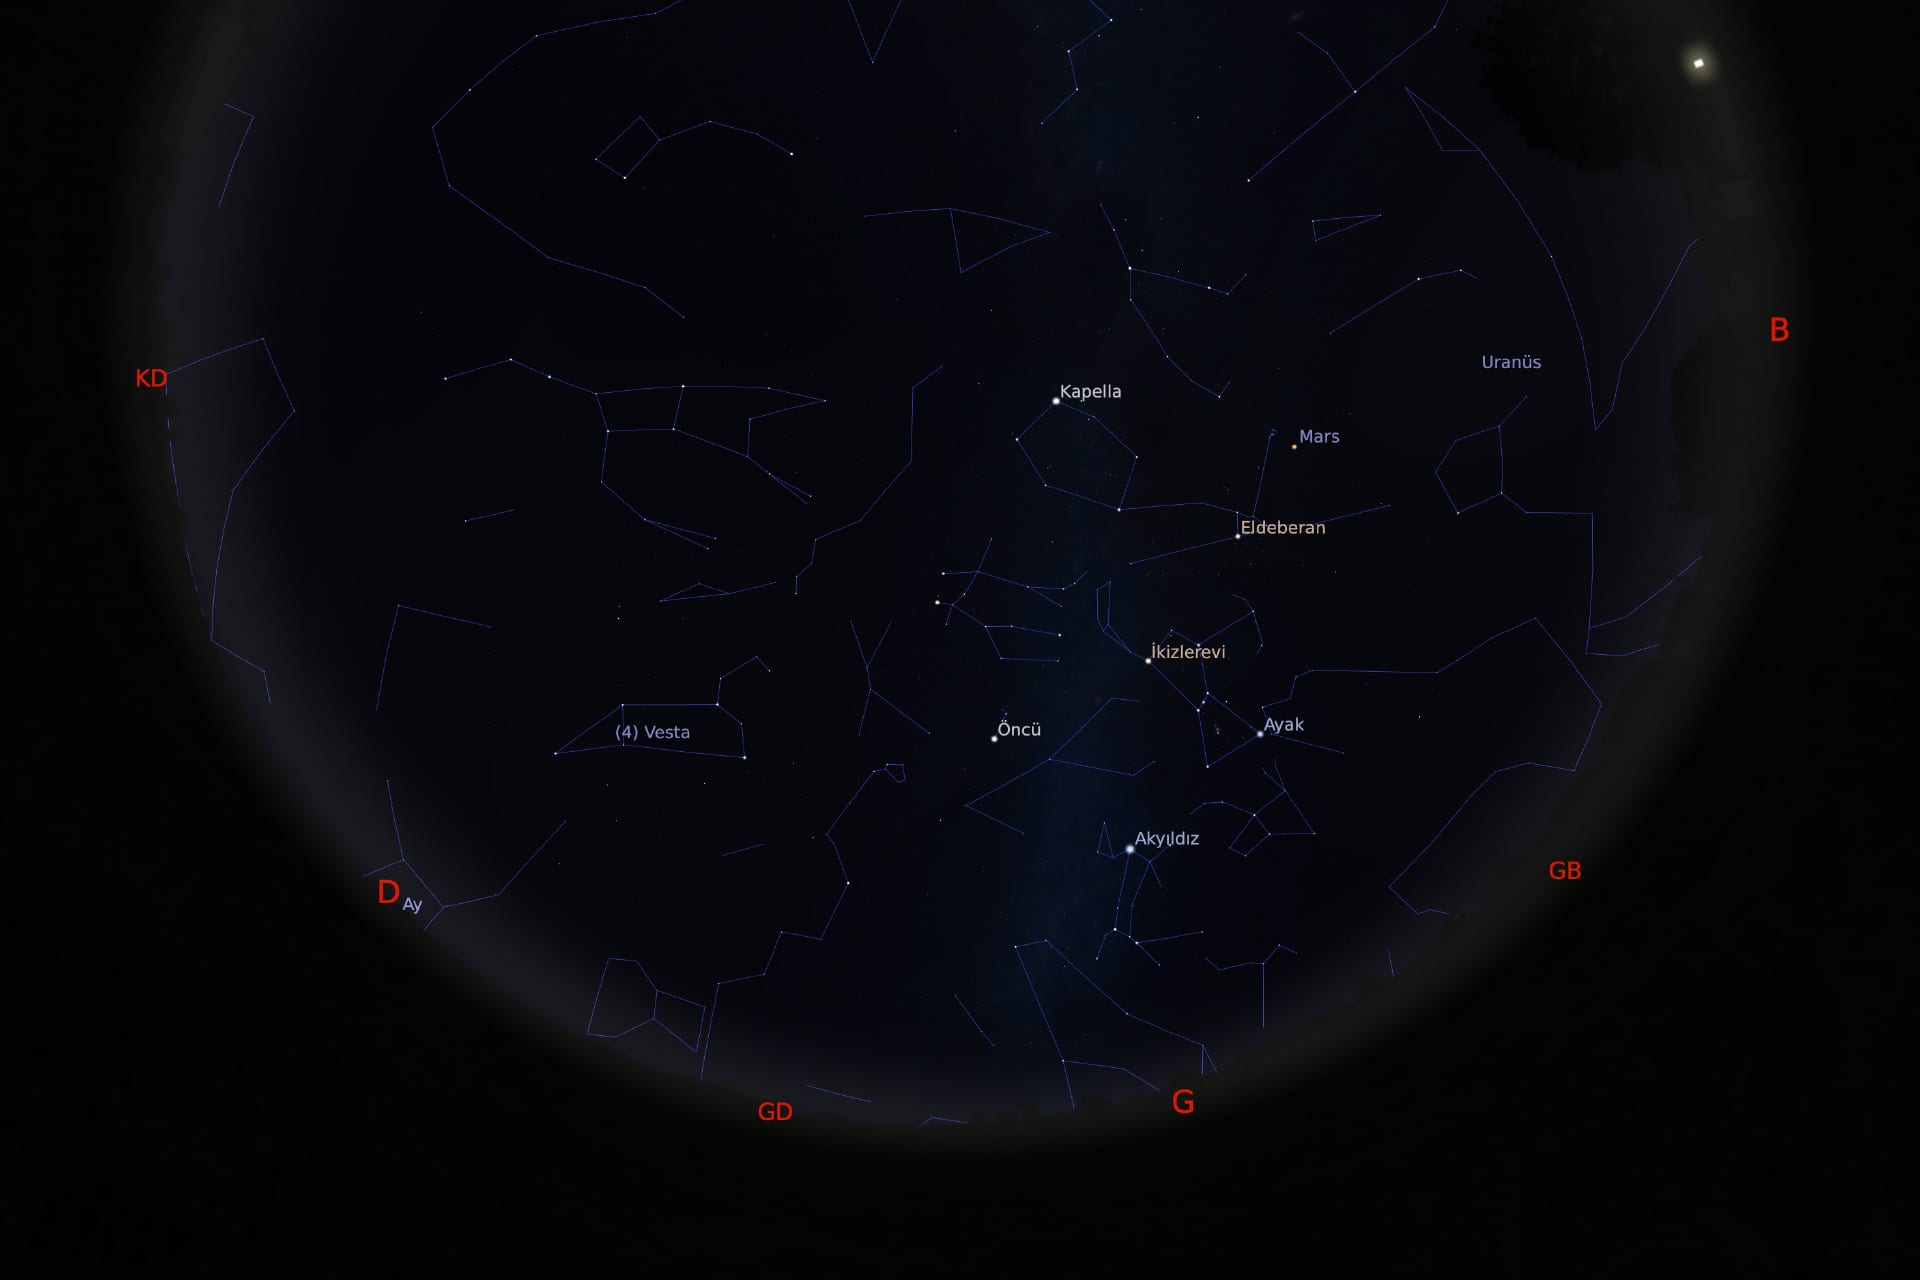 1 Mart 2021 - saat 21:30'daki gökyüzü görüntüsü